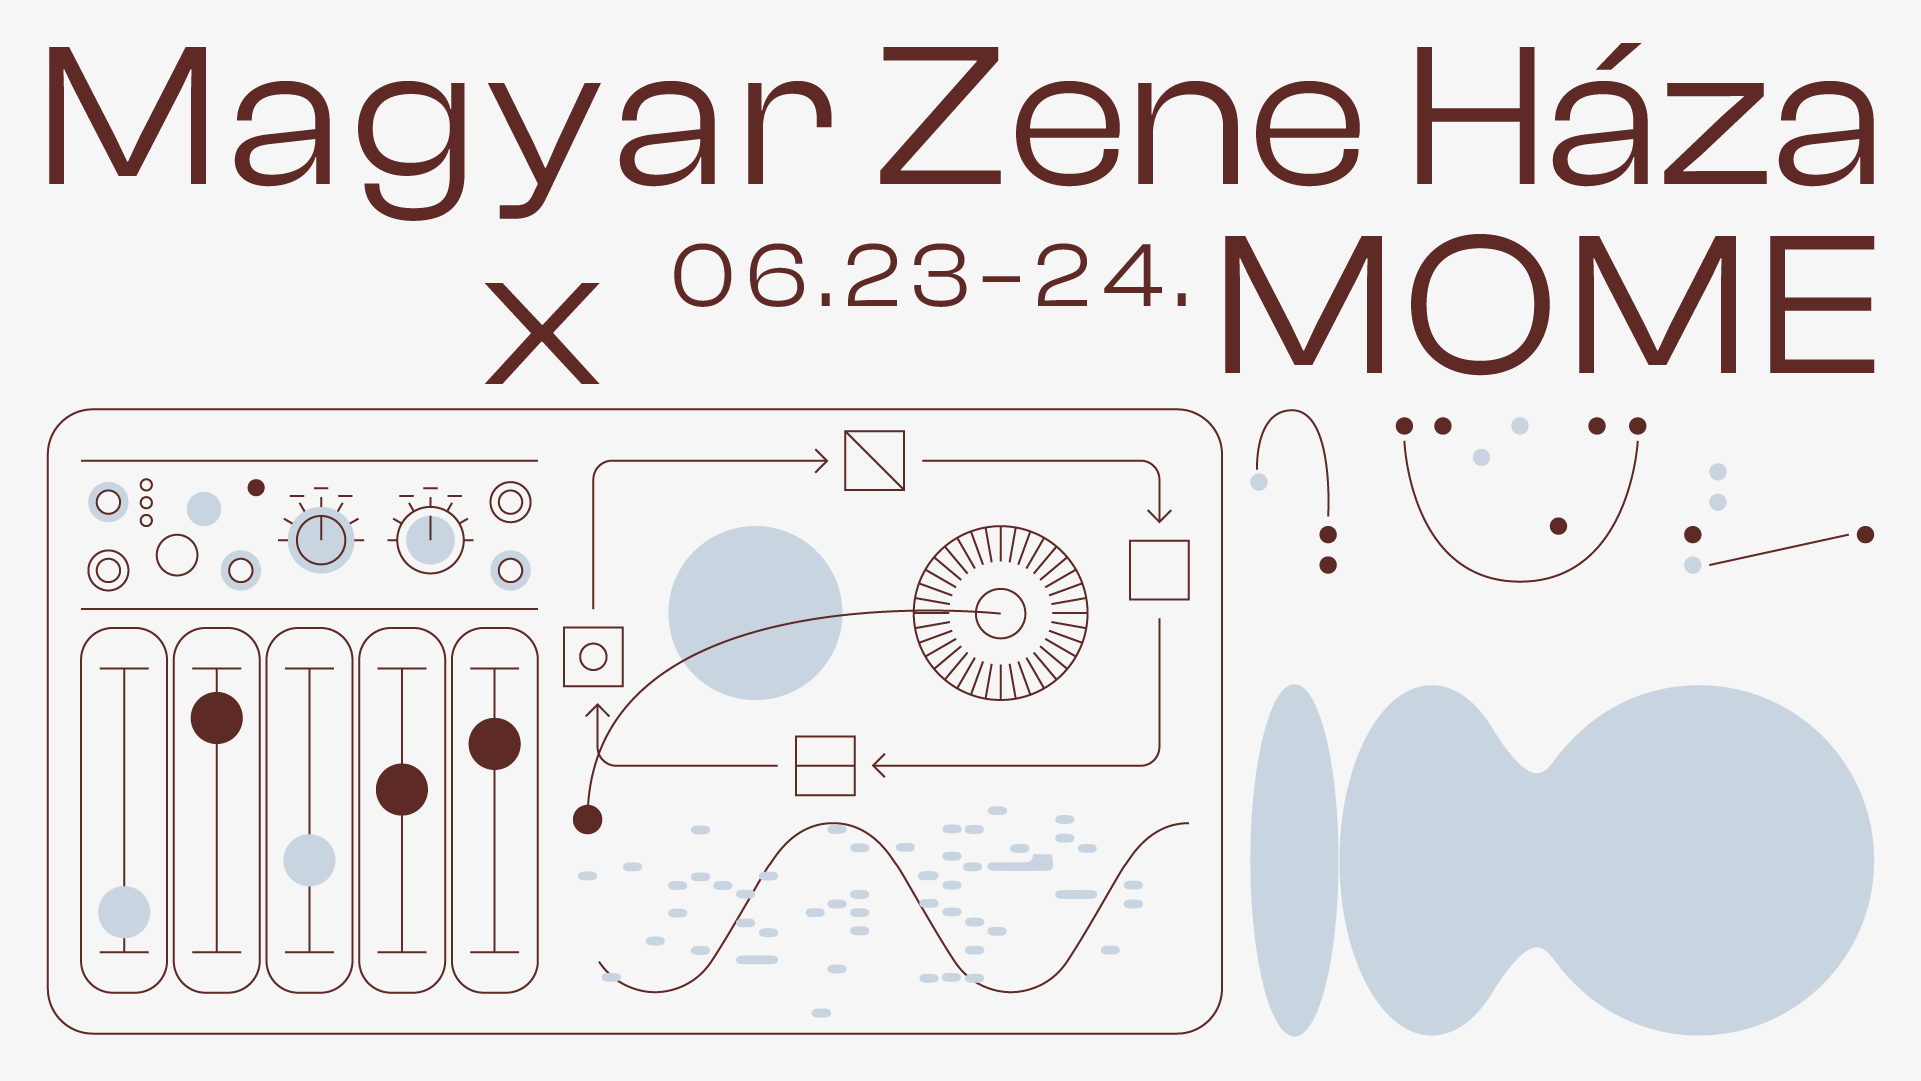 Intermezzo Fesztivál - MOME X MZH 1. nap: Kerekasztal beszélgetés a zeneipar jövőjéről